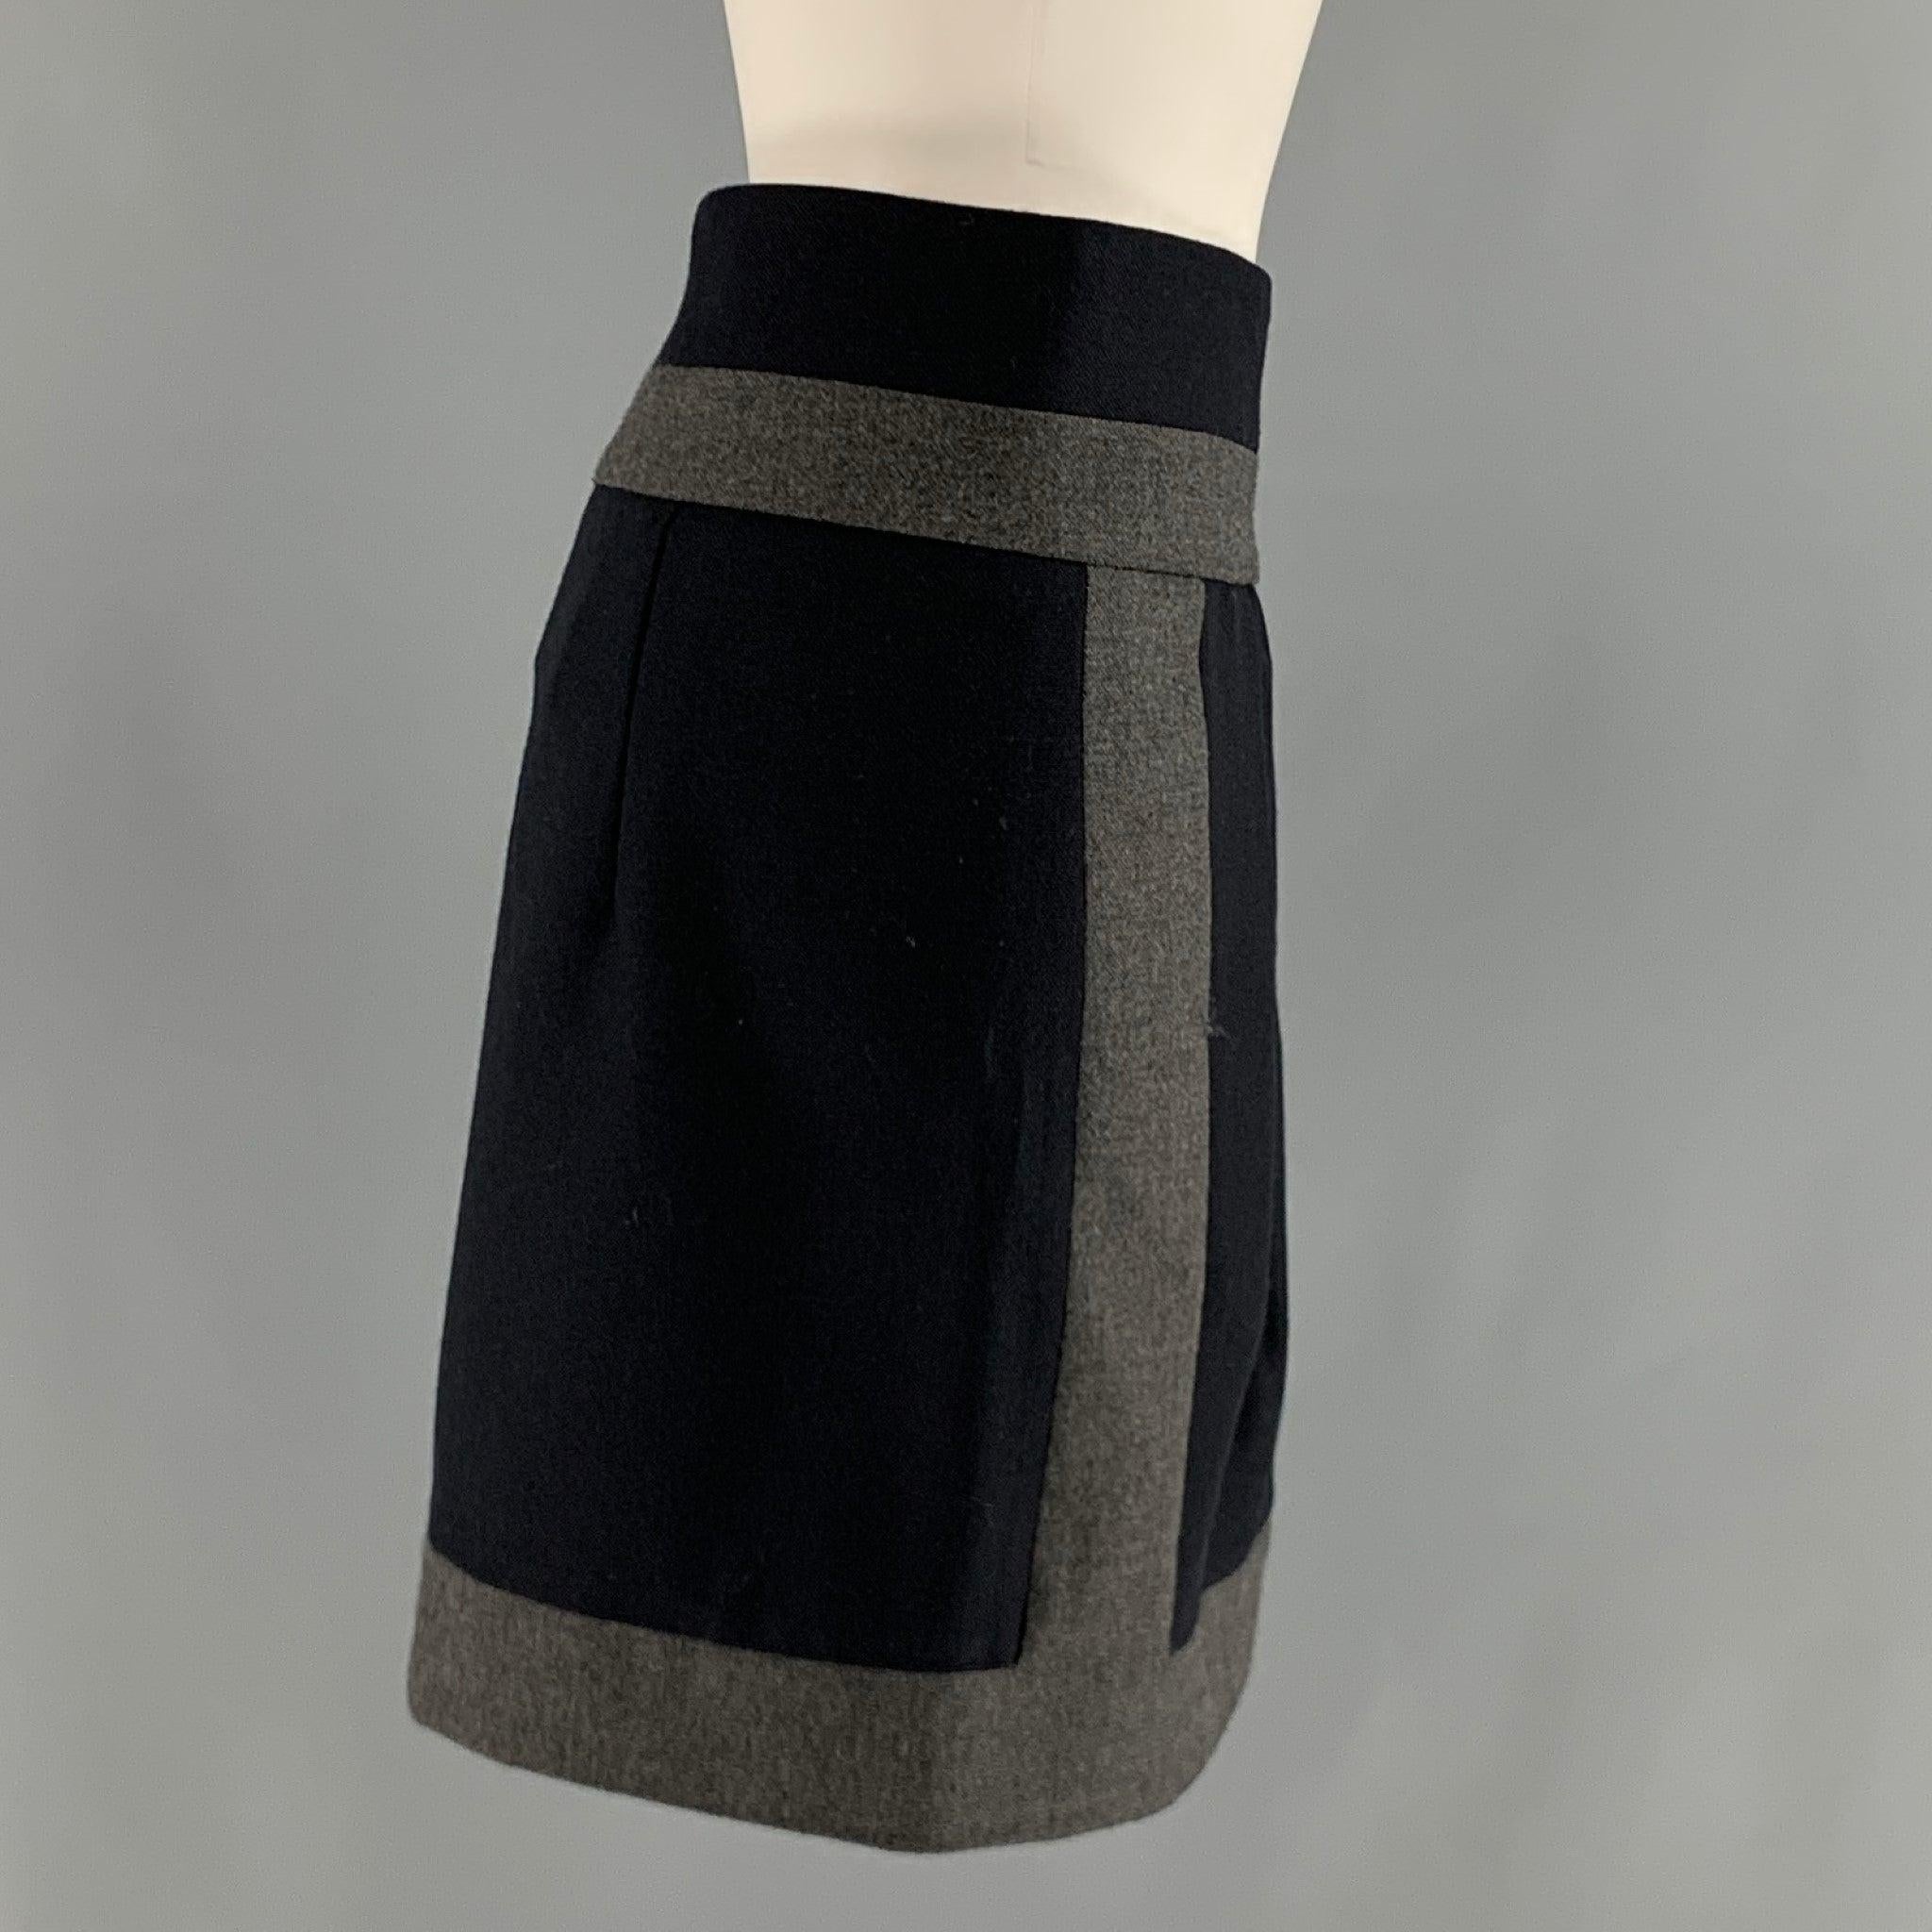 La jupe BRUNELLO CUCINELLI est réalisée dans une matière tissée en laine marine et grise et présente une
 style color block, devant plissé, et style crayon. Fabriqué en Italie. Excellent état. 

Marqué :   6 

Mesures : 
  Taille : 34 pouces 